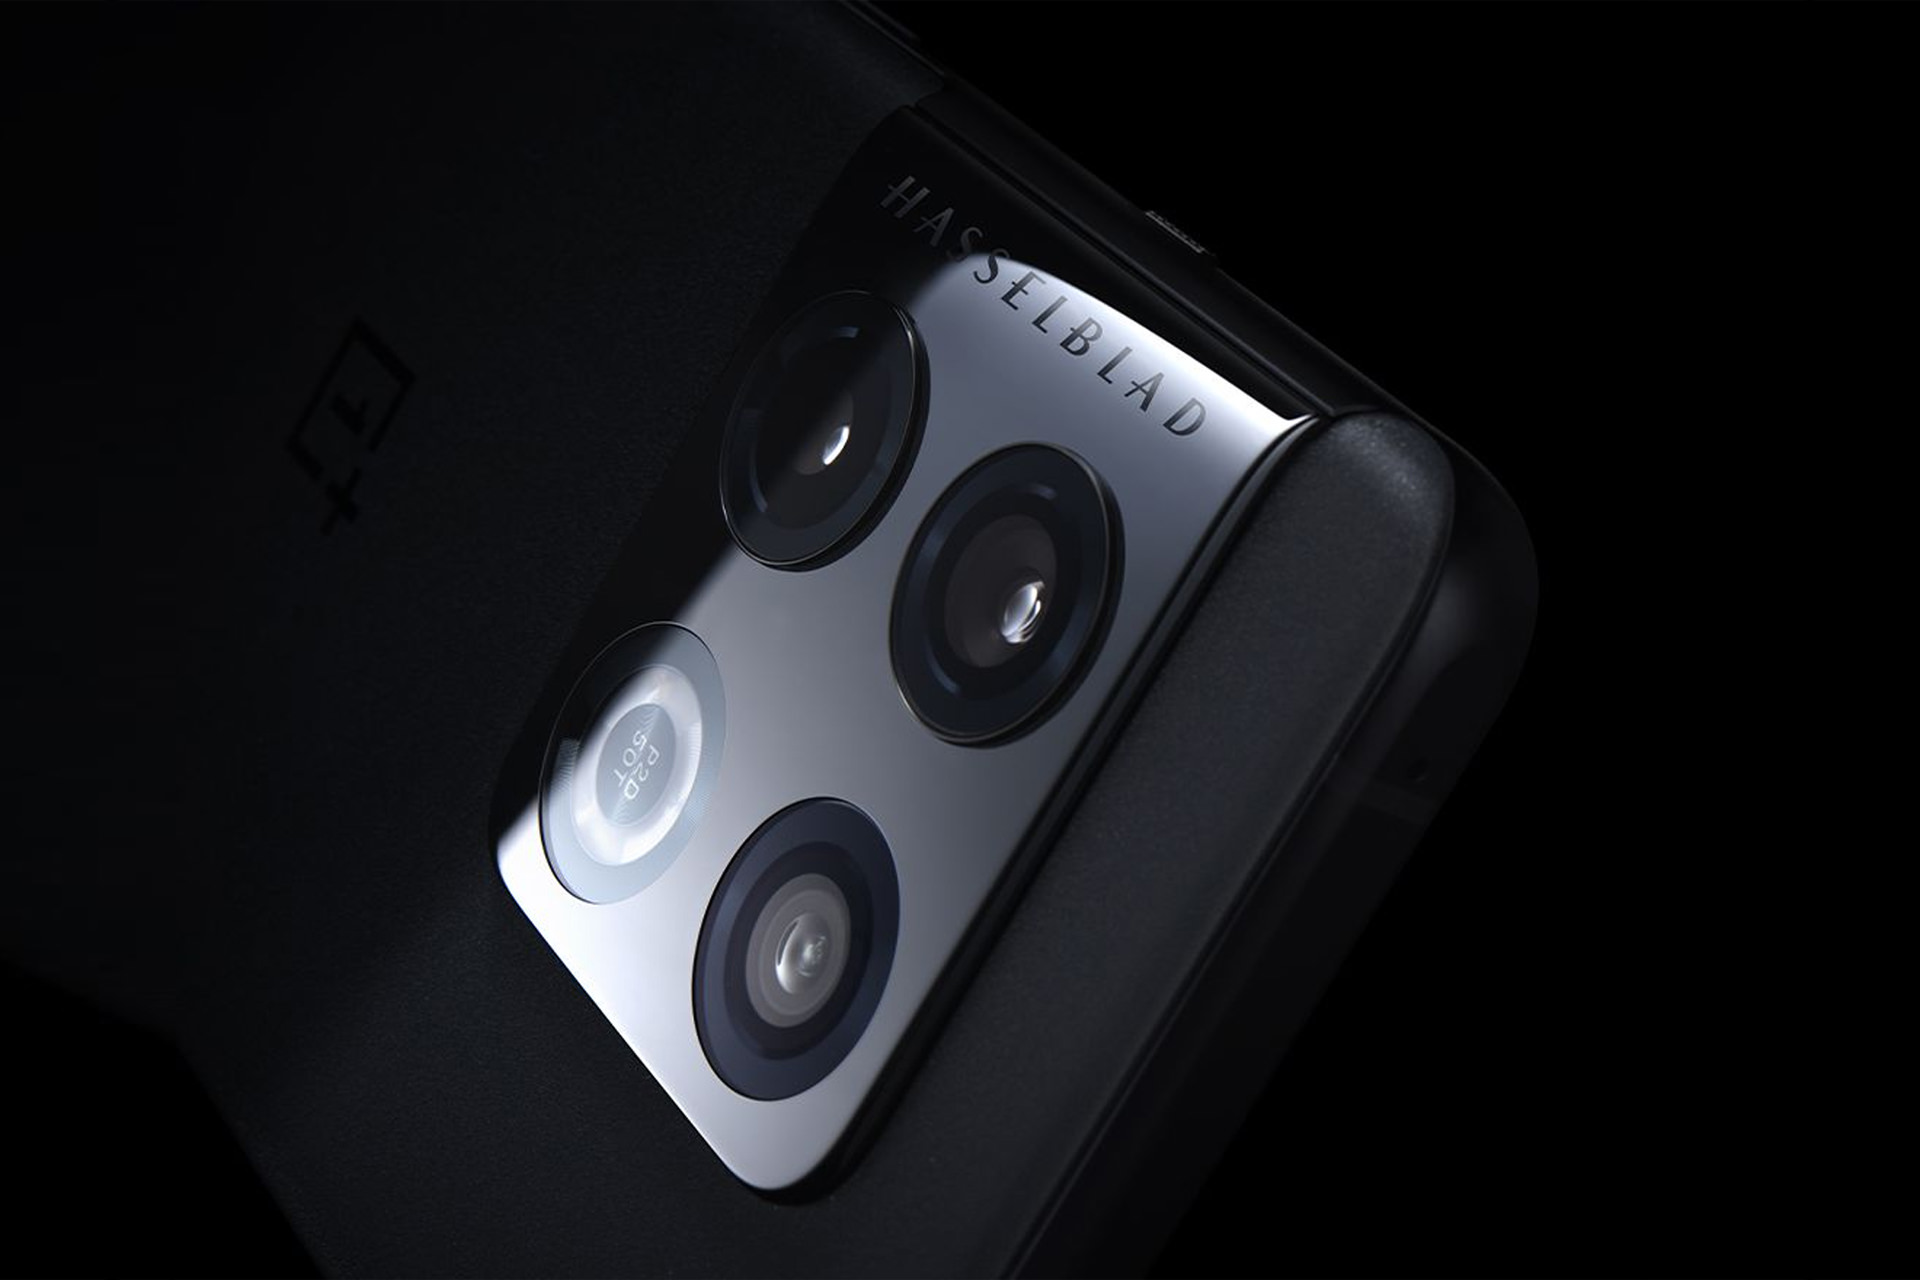 عبارت هسل بلاد روی دوربین وان پلاس ۱۰ پرو / OnePlus 10 Pro